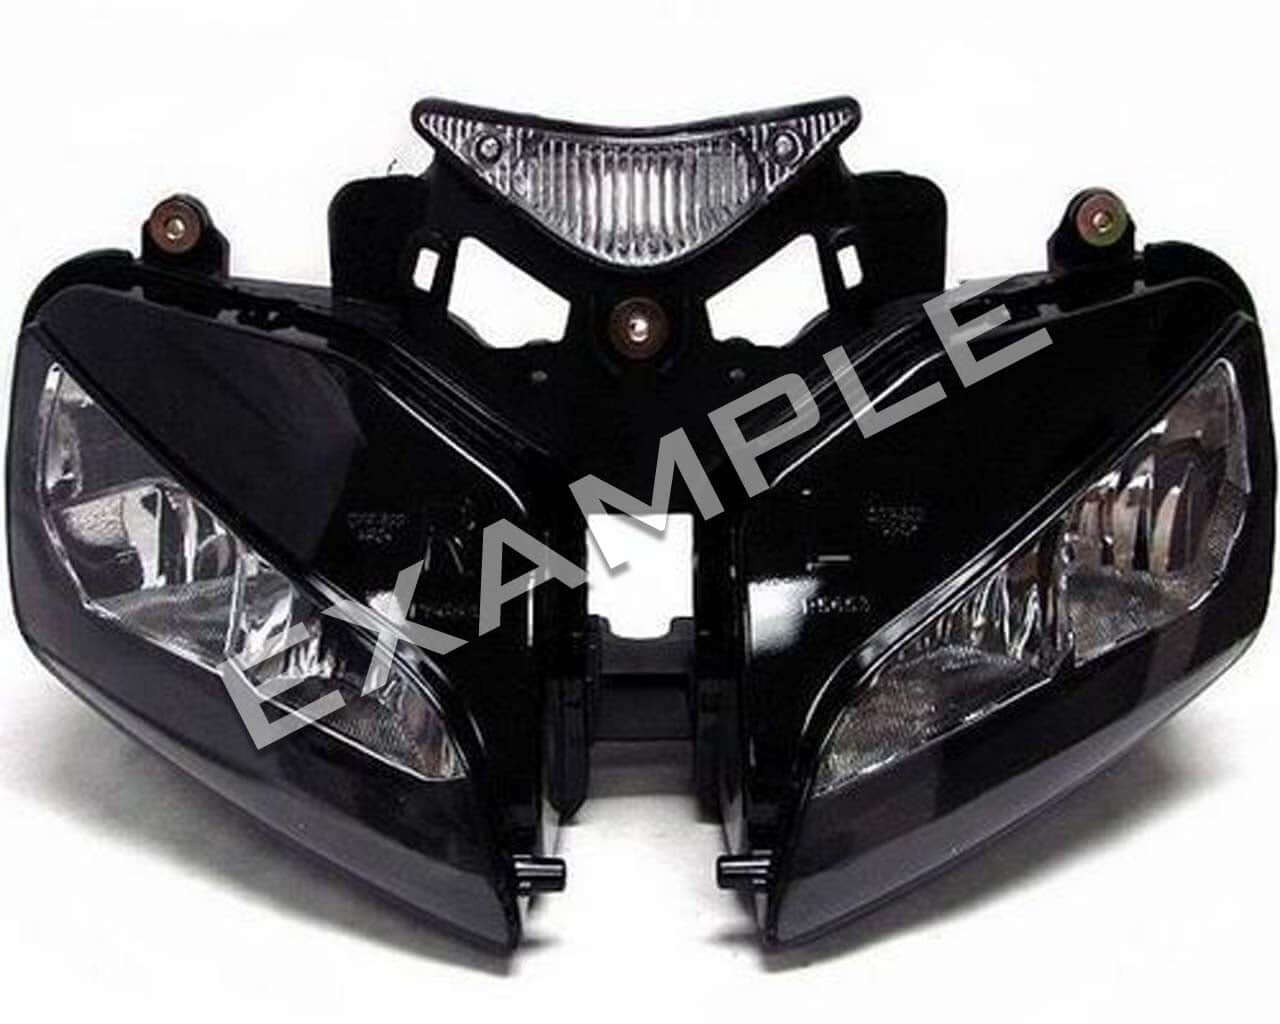 Honda CBR1000RR 03-07 bi-xenon koplamp licht upgrade kit